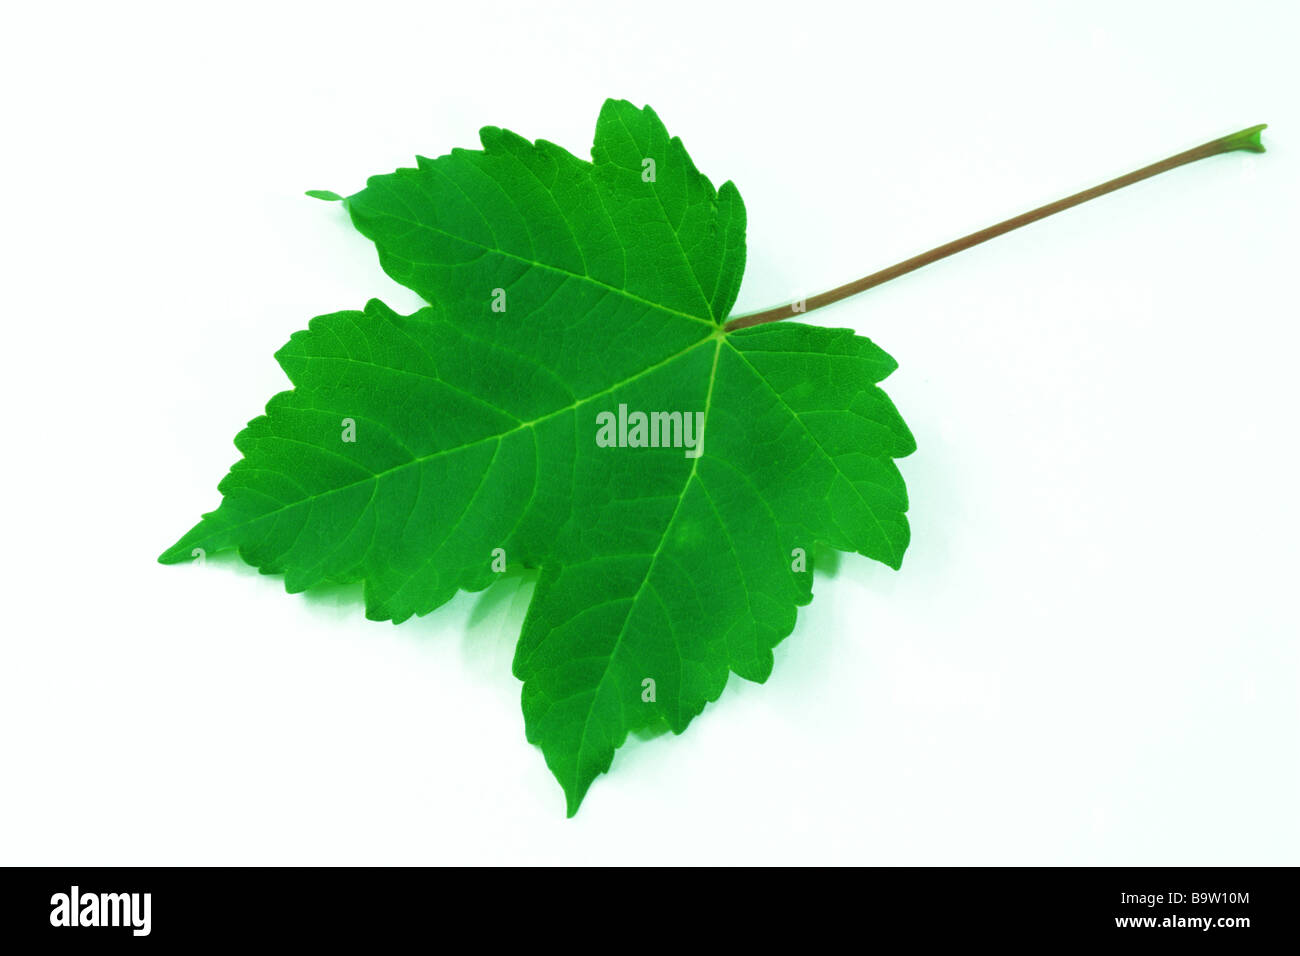 Sycamore Maple (Acer pseudoplatanus) leaf studio picture Stock Photo